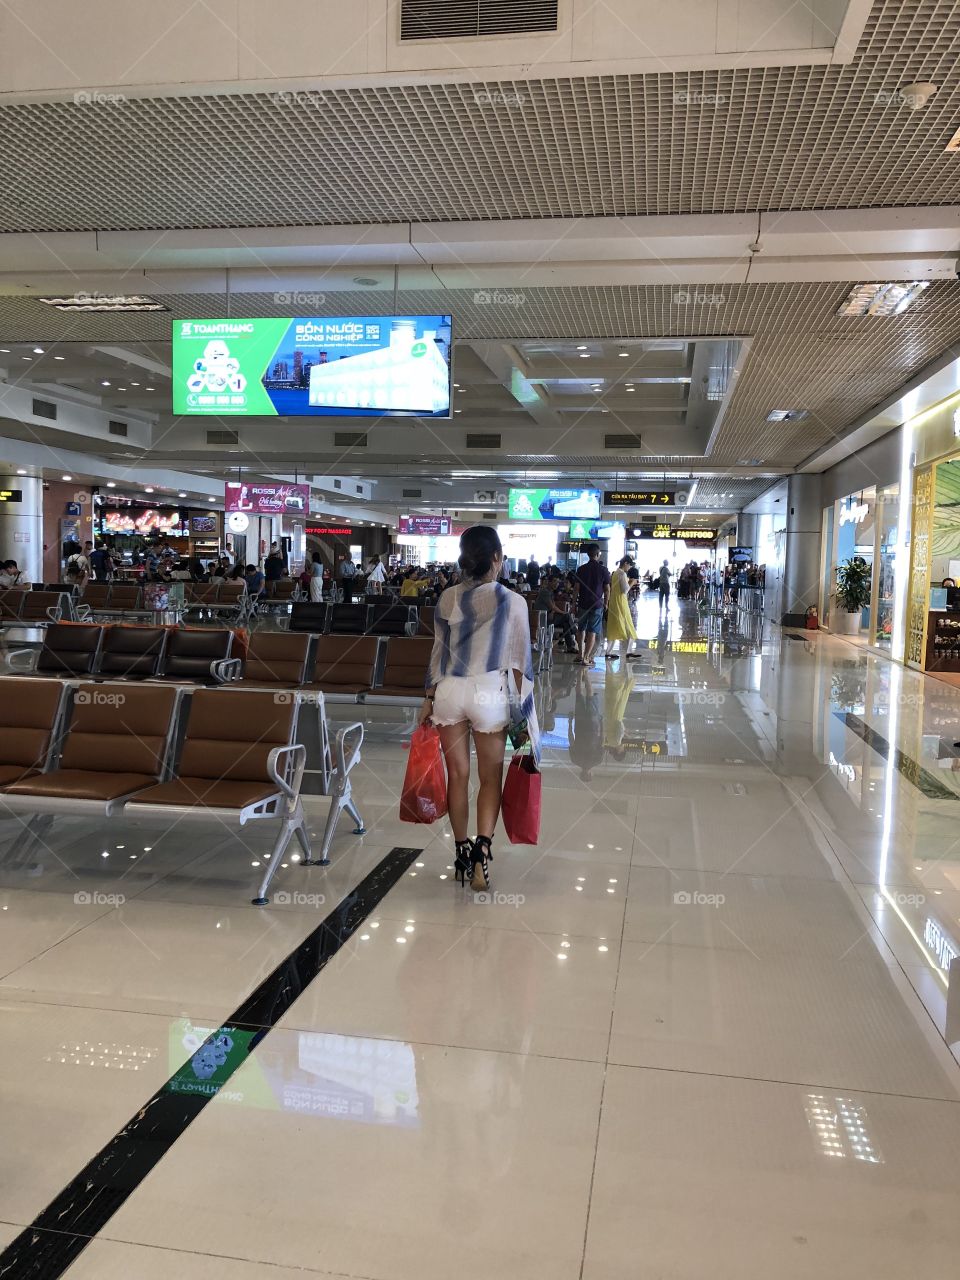 noi bai airport in Ha Noi - Viet nam